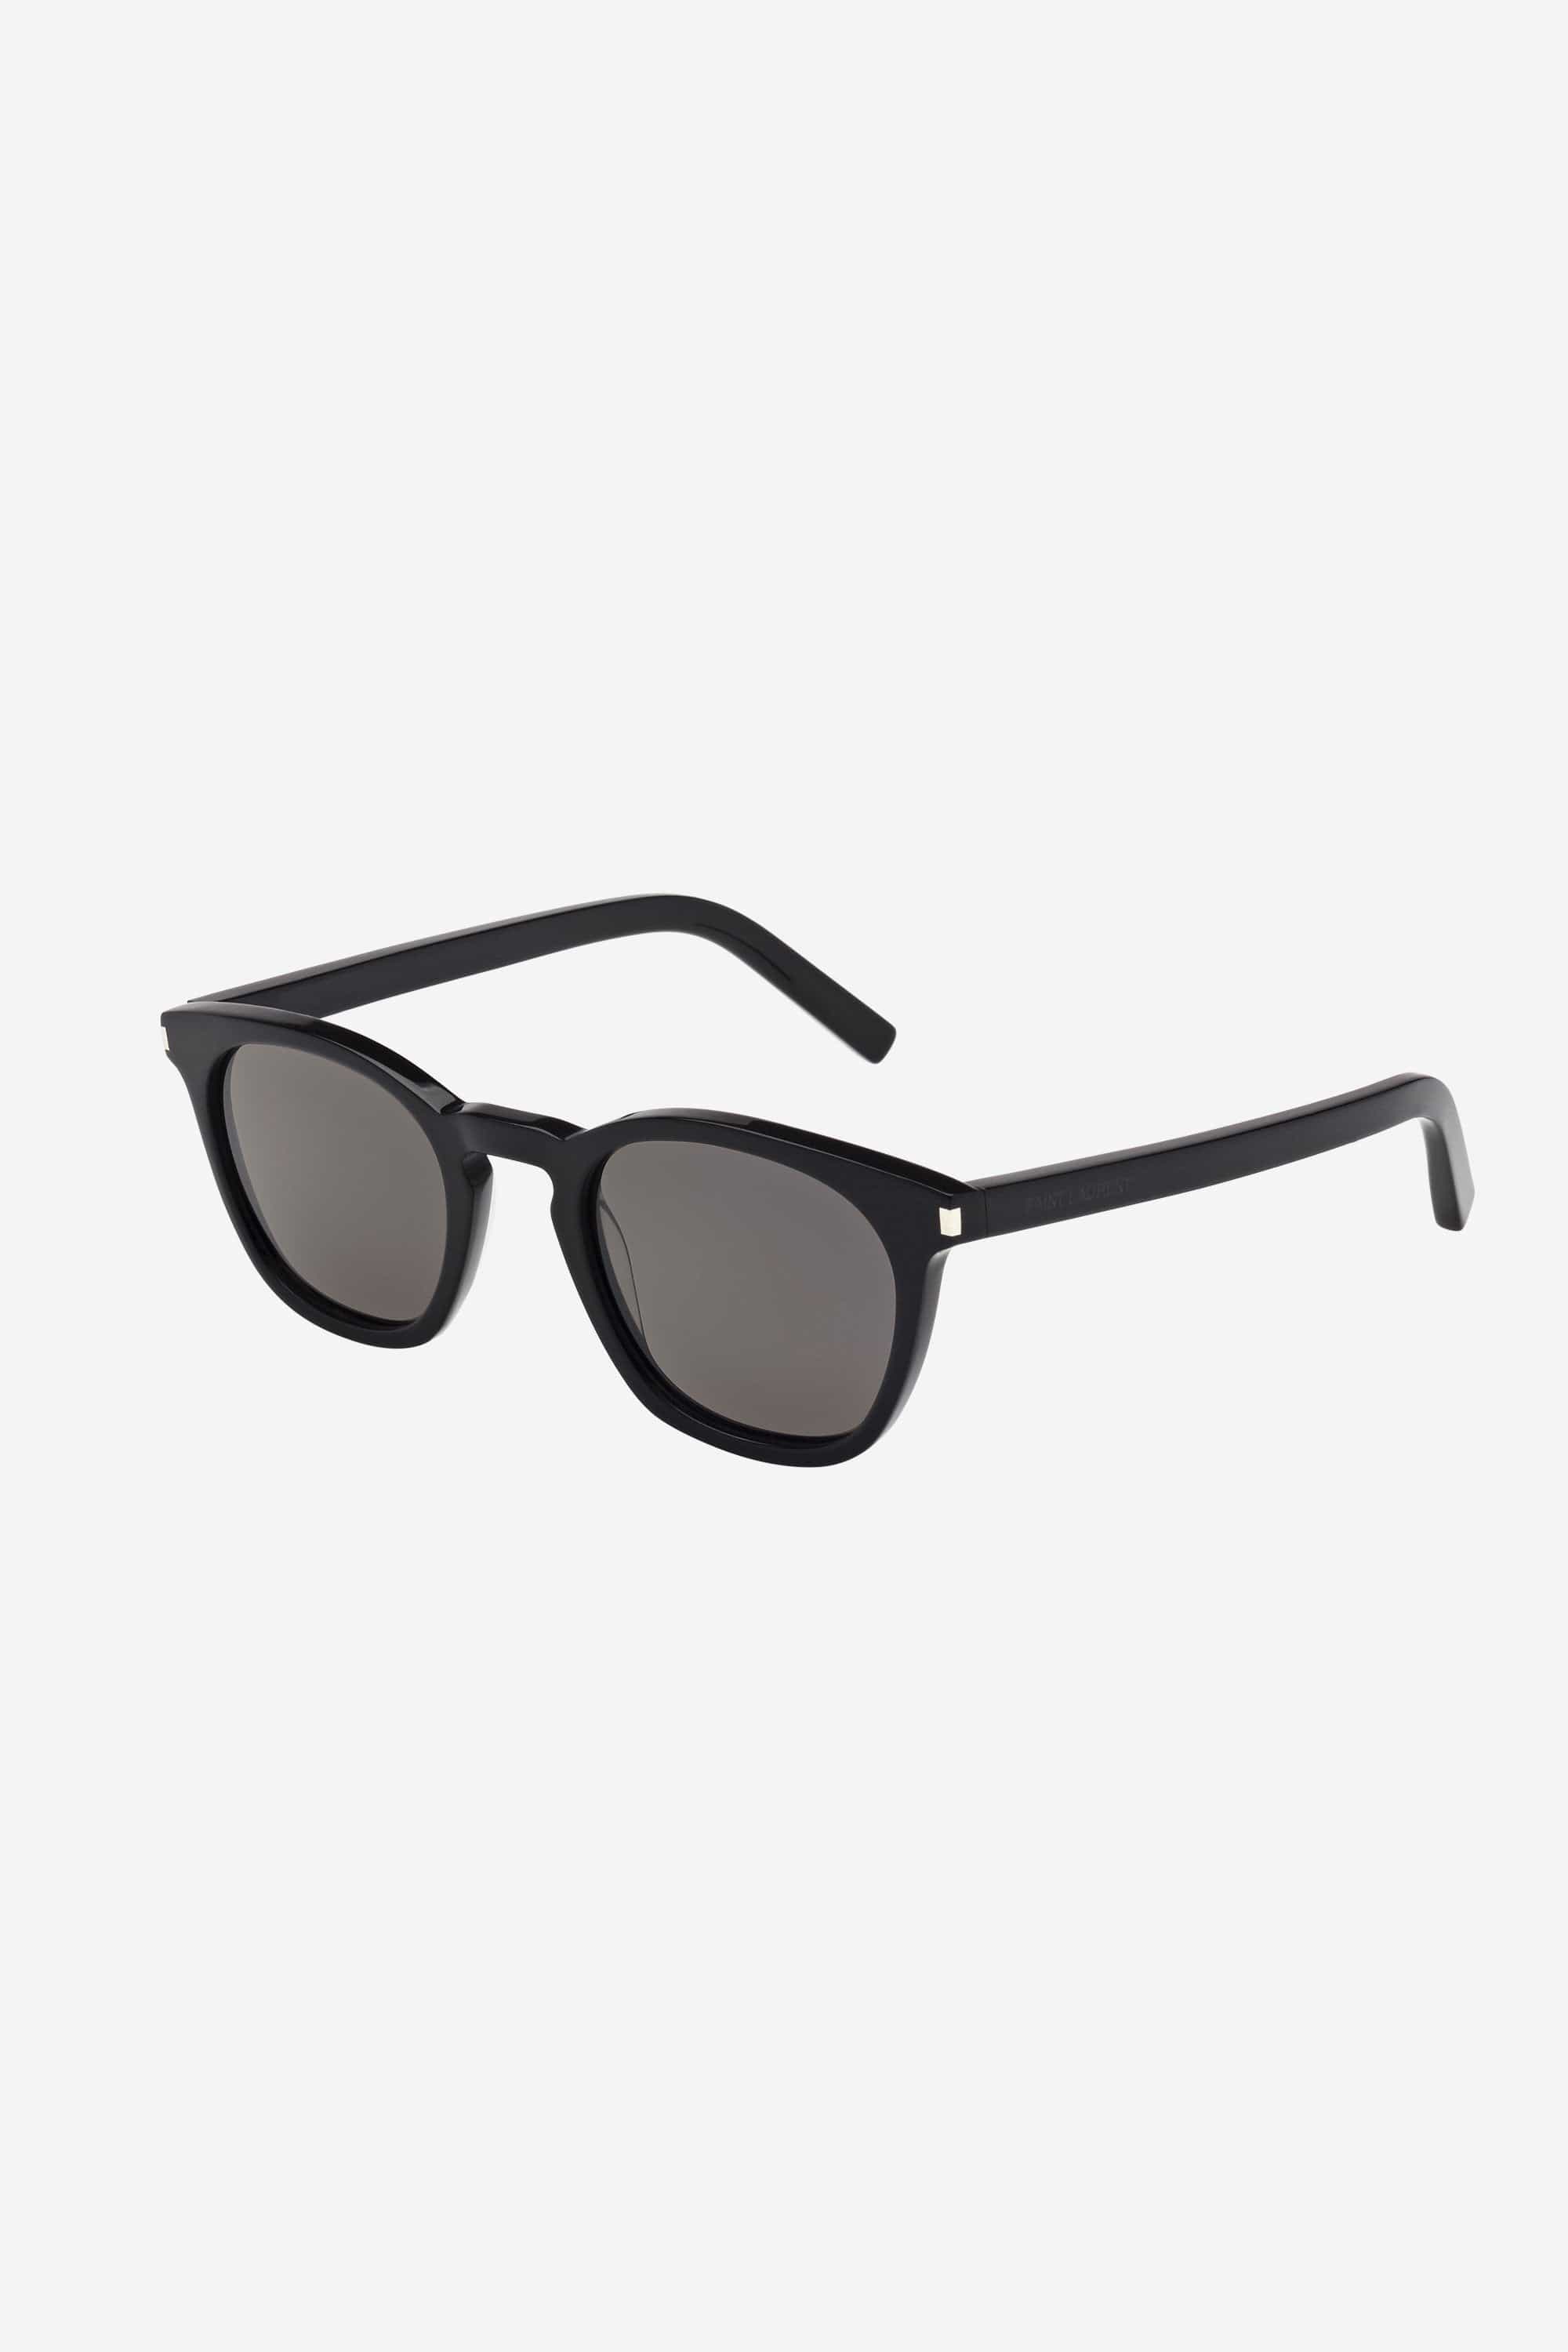 Saint Laurent UNISEX iconic SL 28 black sunglasses - Eyewear Club